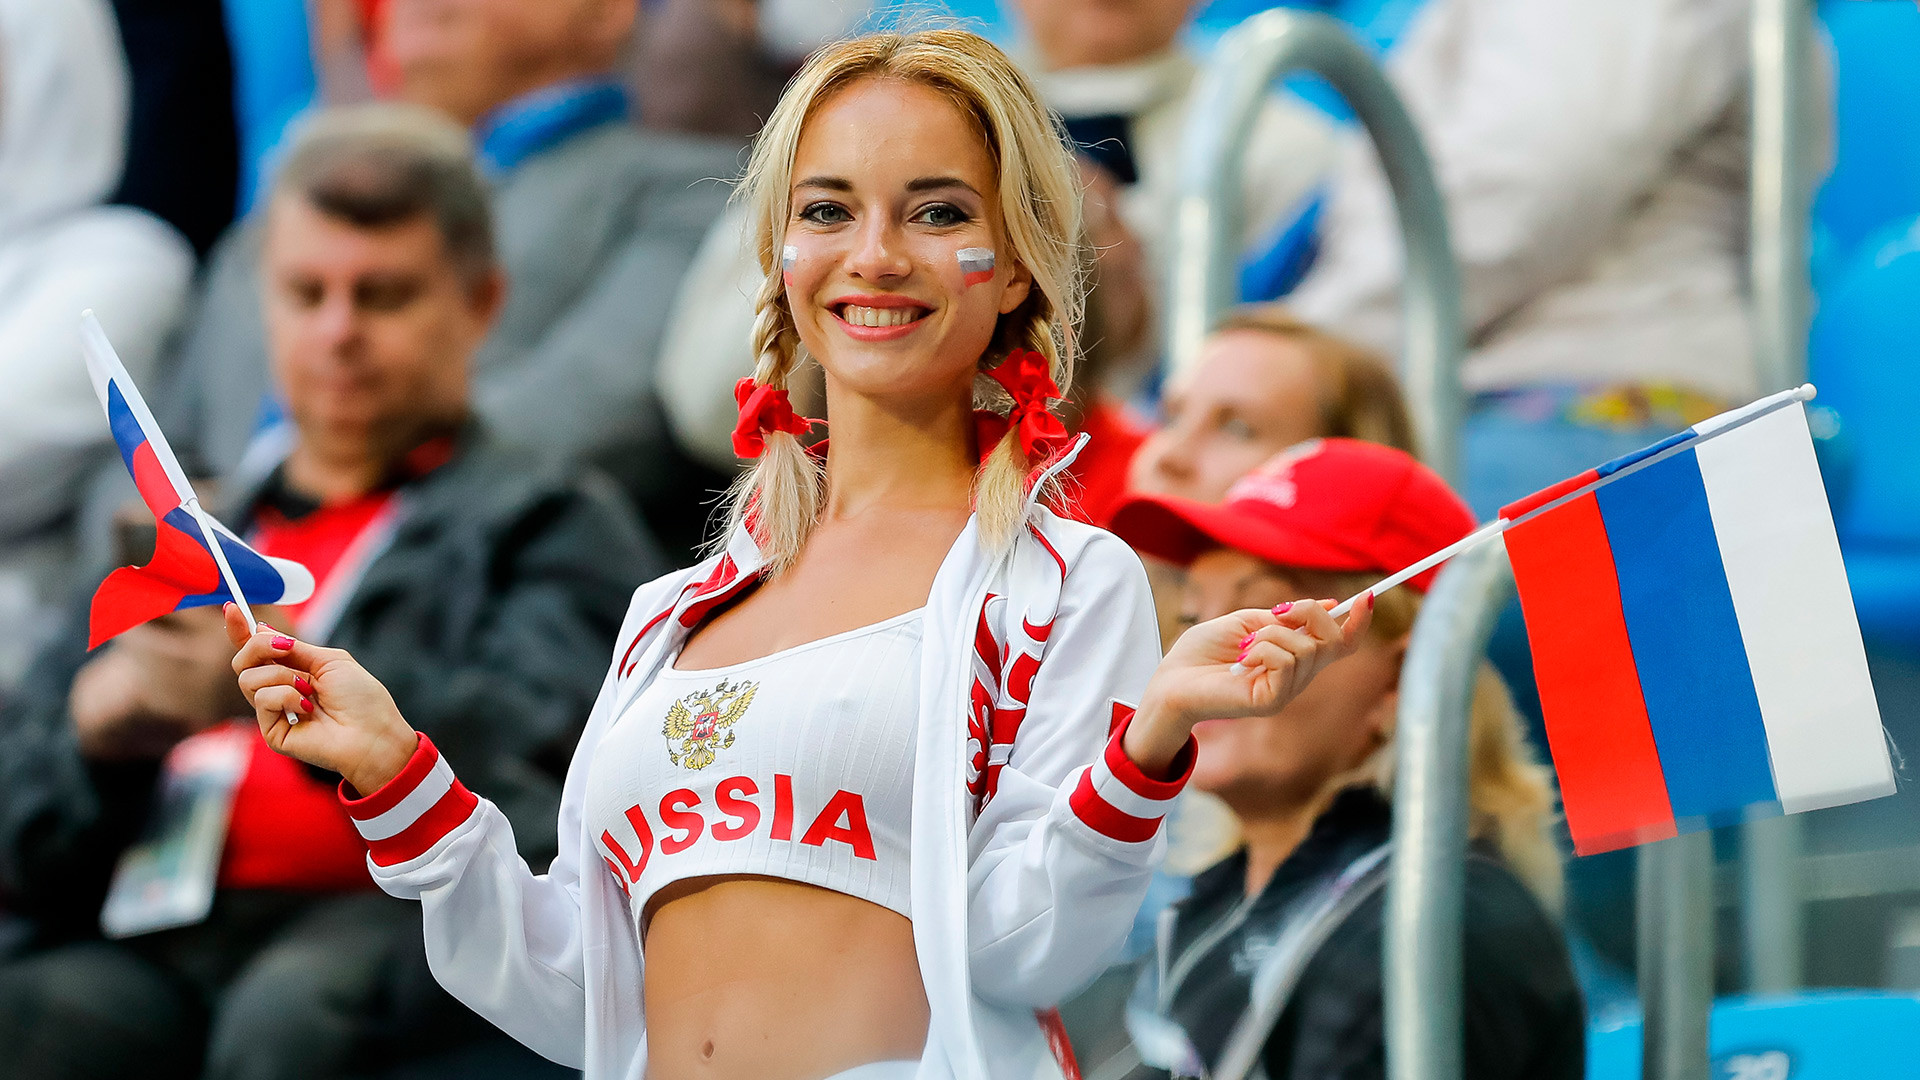 Le Mondial en images comment les supporters russes arborentils les